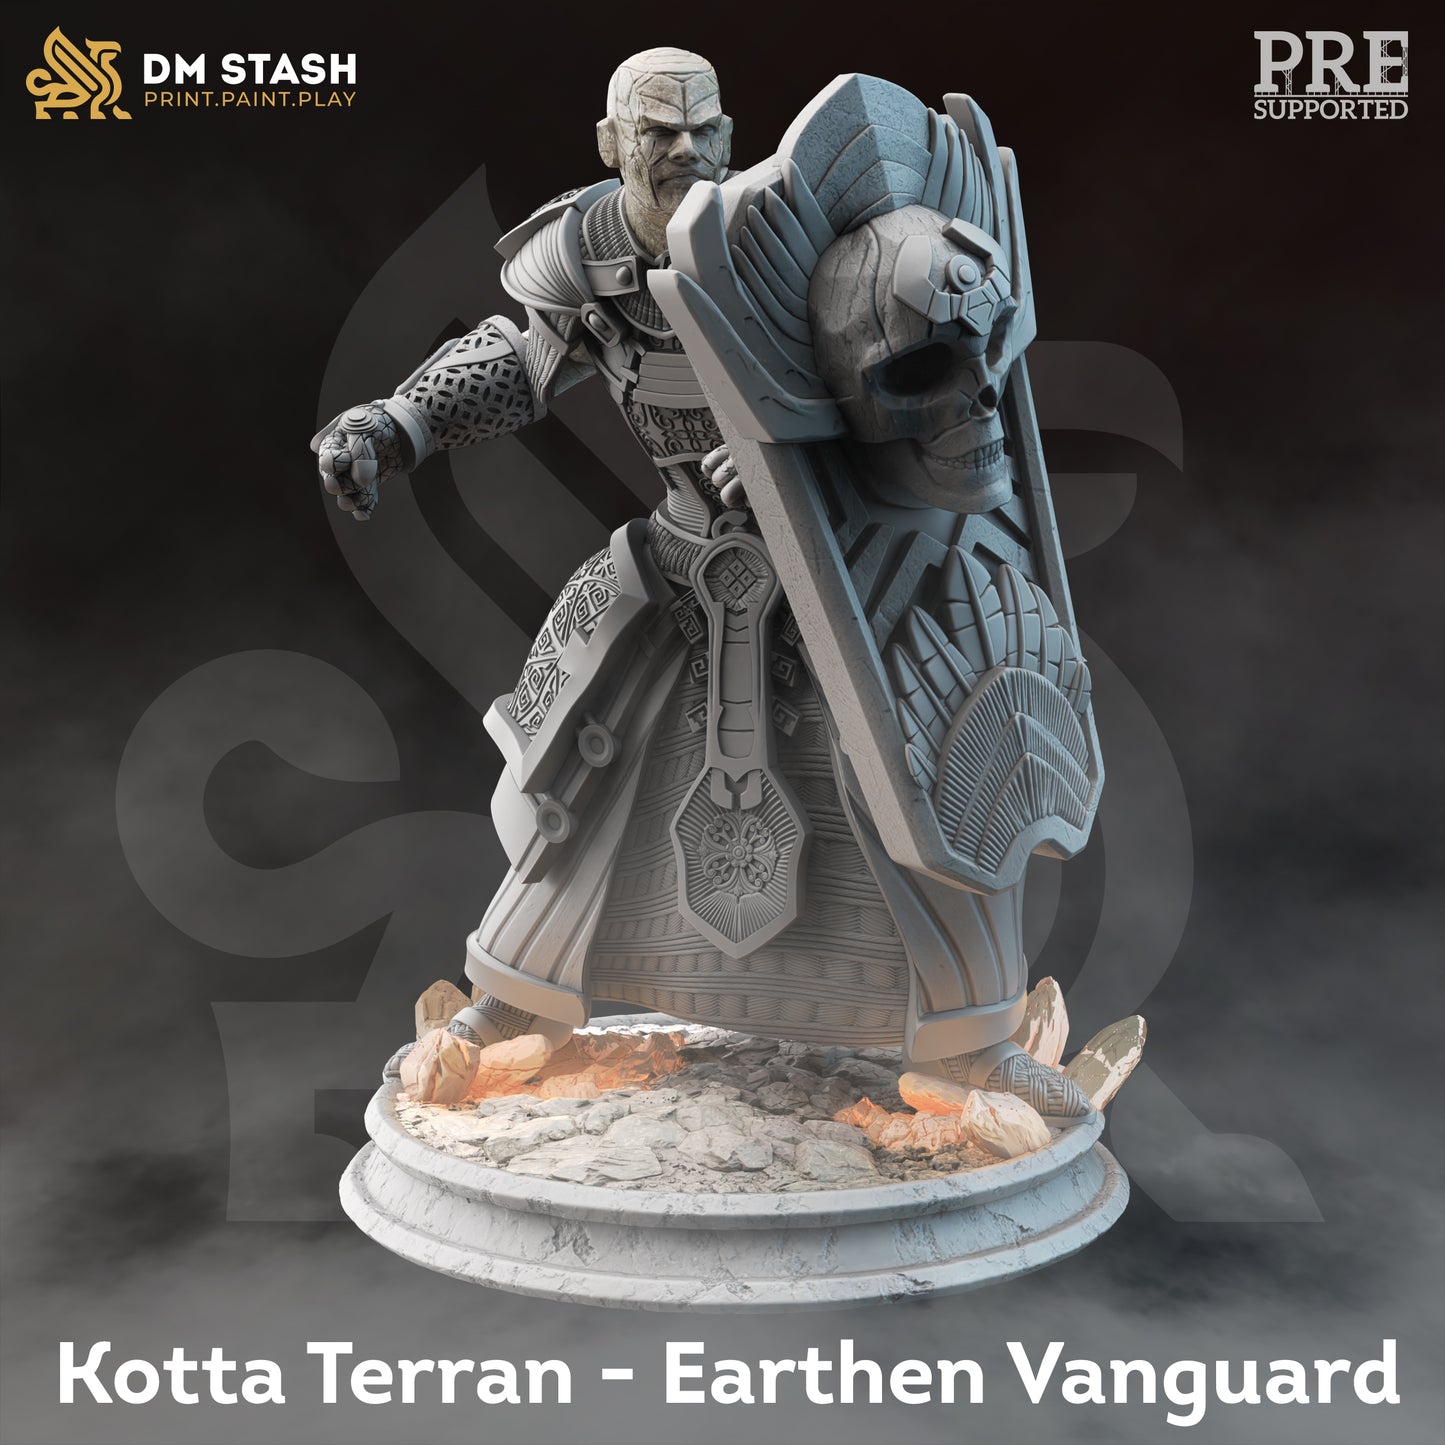 Kotta Terran - Earthen Vanguard